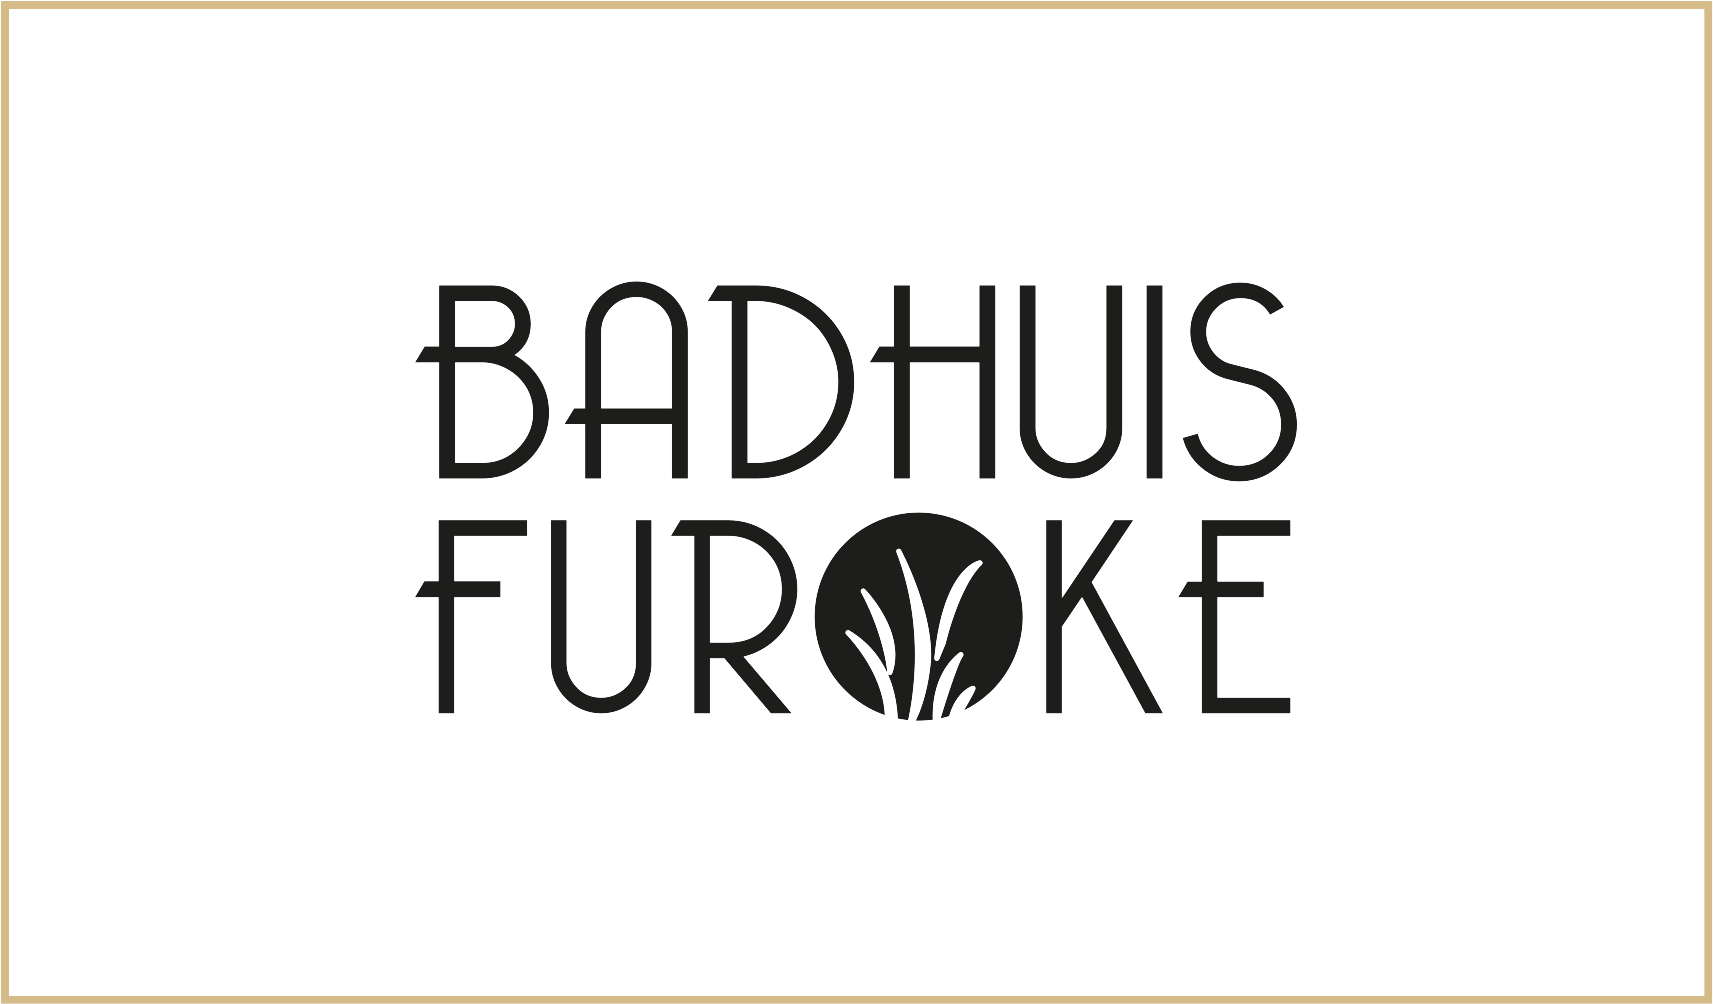 Badhuis Furoke